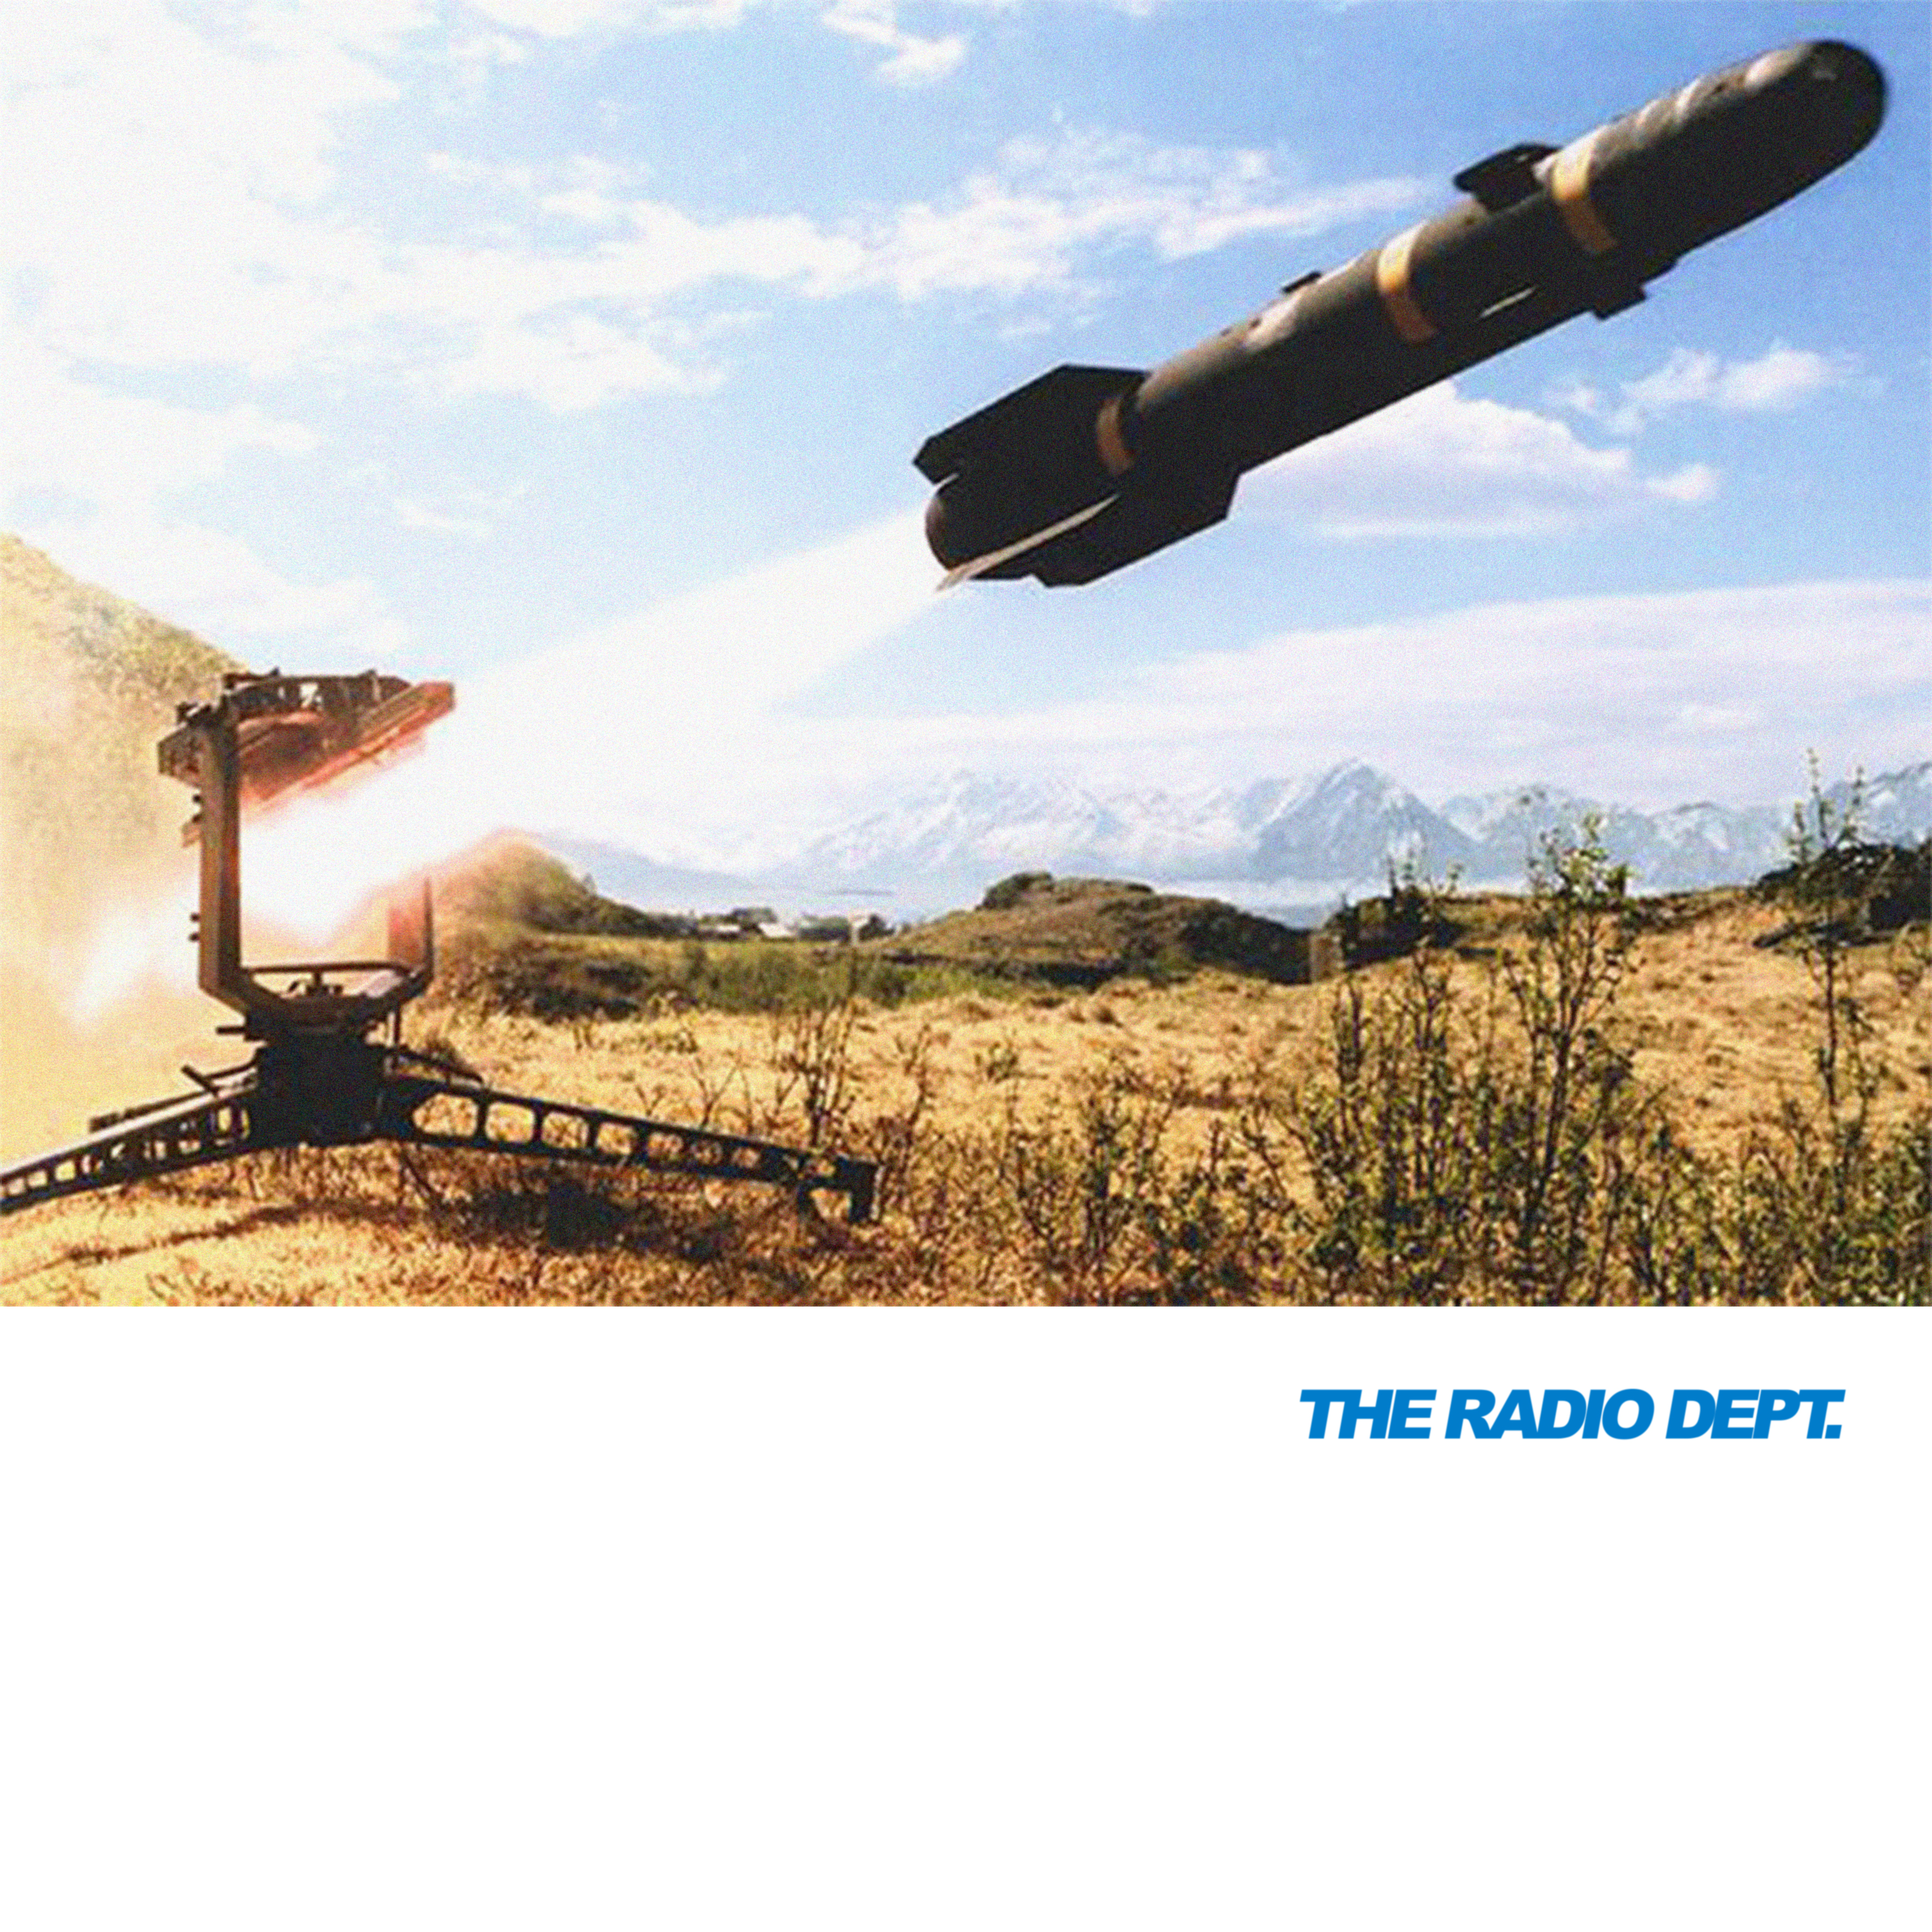 The Radio Dept – Swedish guns